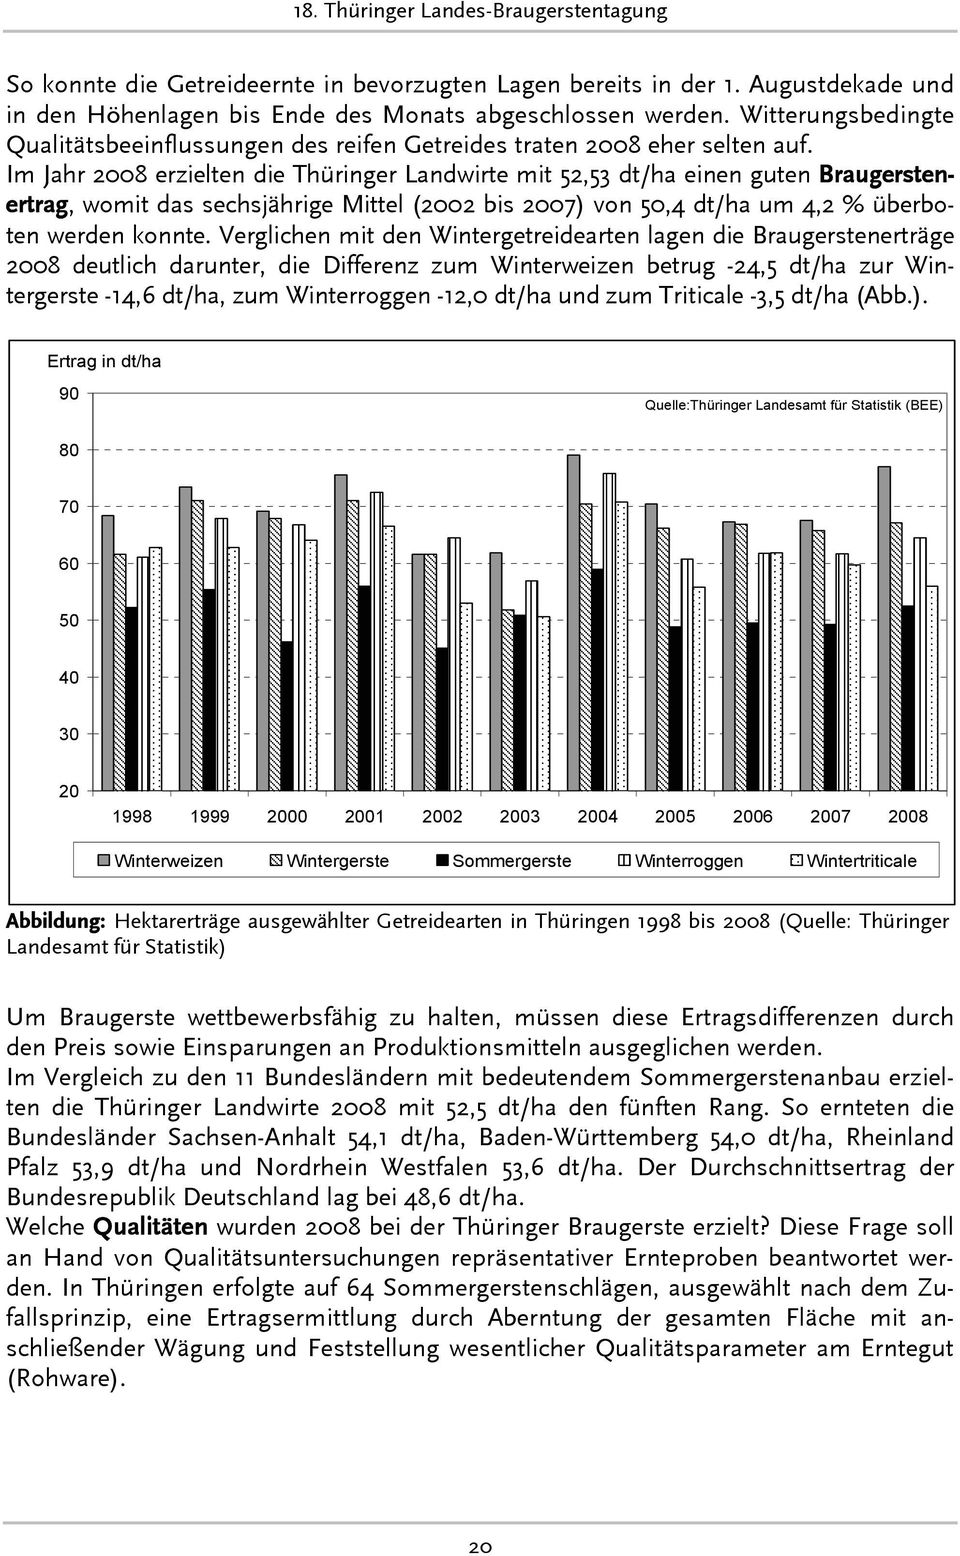 Im Jahr 20 erzielten die Thüringer Landwirte mit 52,53 dt/ha einen guten Braugerstenertrag, womit das sechsjährige Mittel (2002 bis 2007) von 50,4 dt/ha um 4,2 % überboten werden konnte.